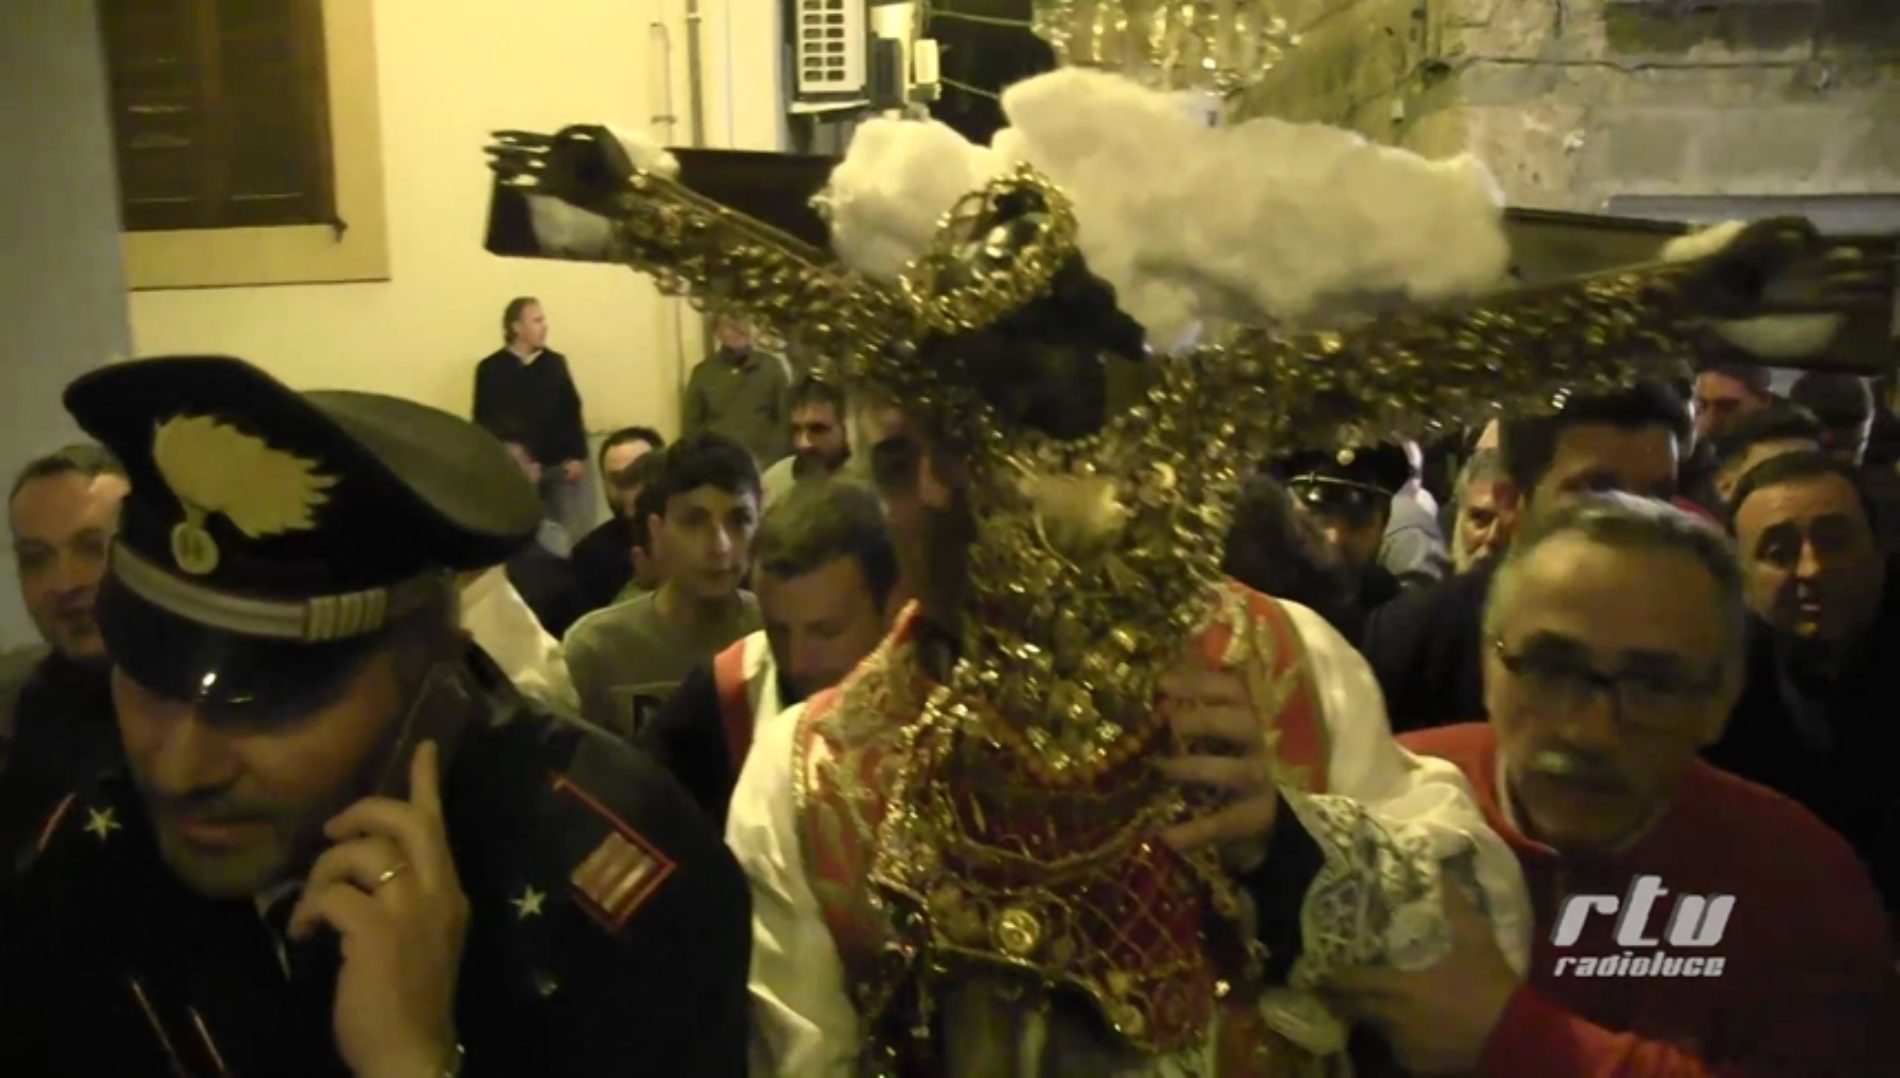 VIDEO – Il SS Crocifisso viene fissato sul trono e riparte la processione